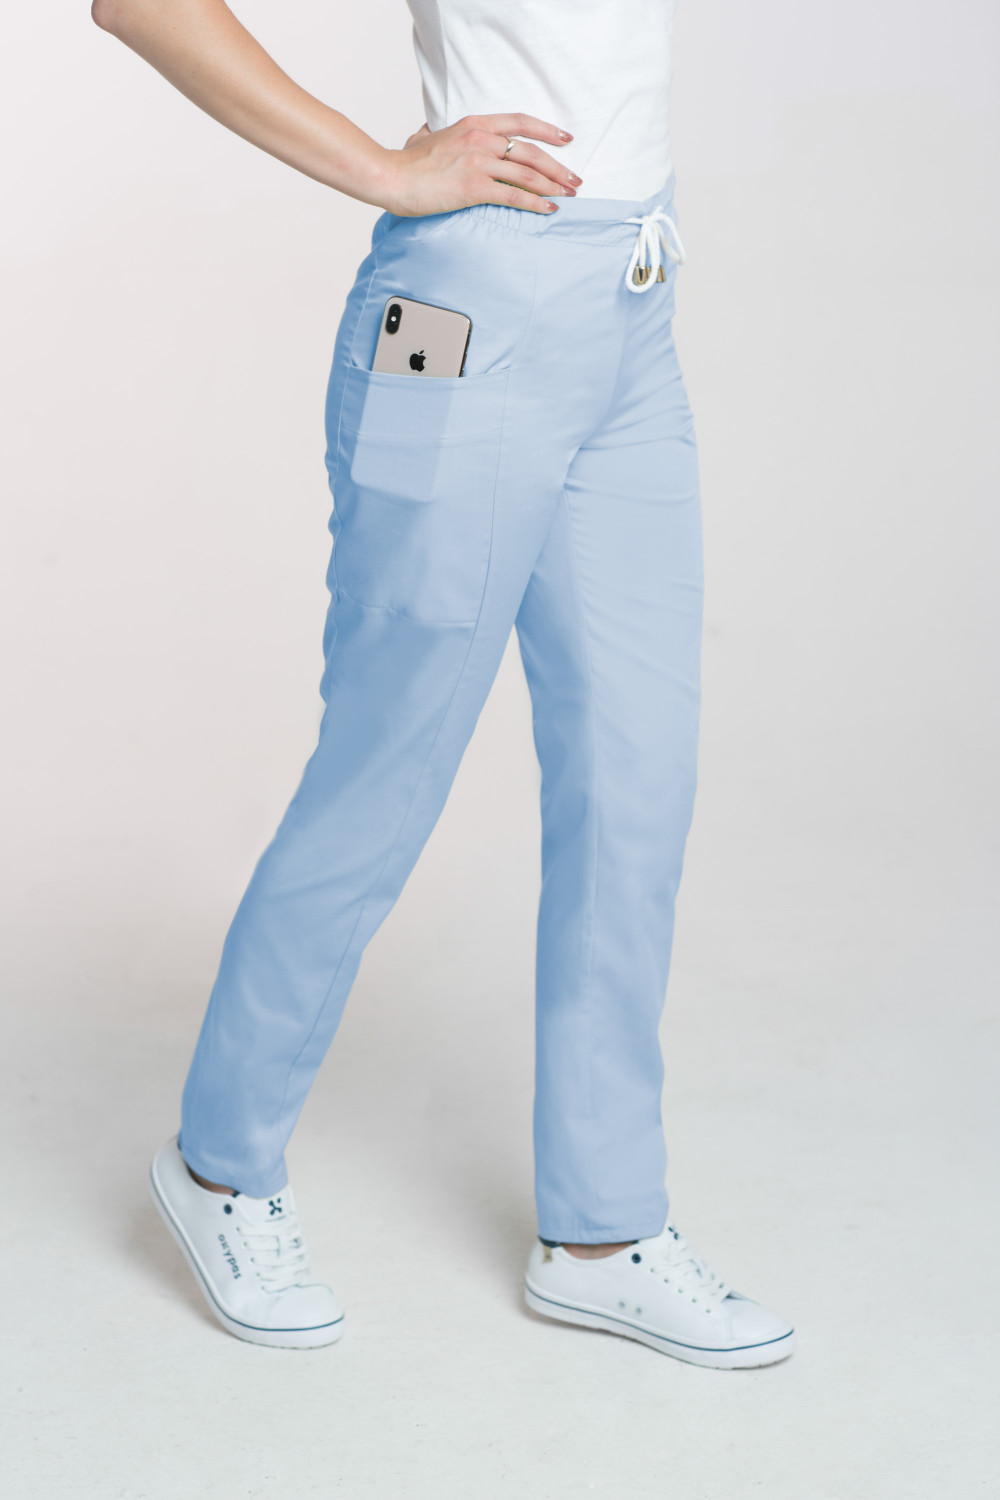 M-200X Elastyczne spodnie damskie medyczne kosmetyczne na sznurku błękit